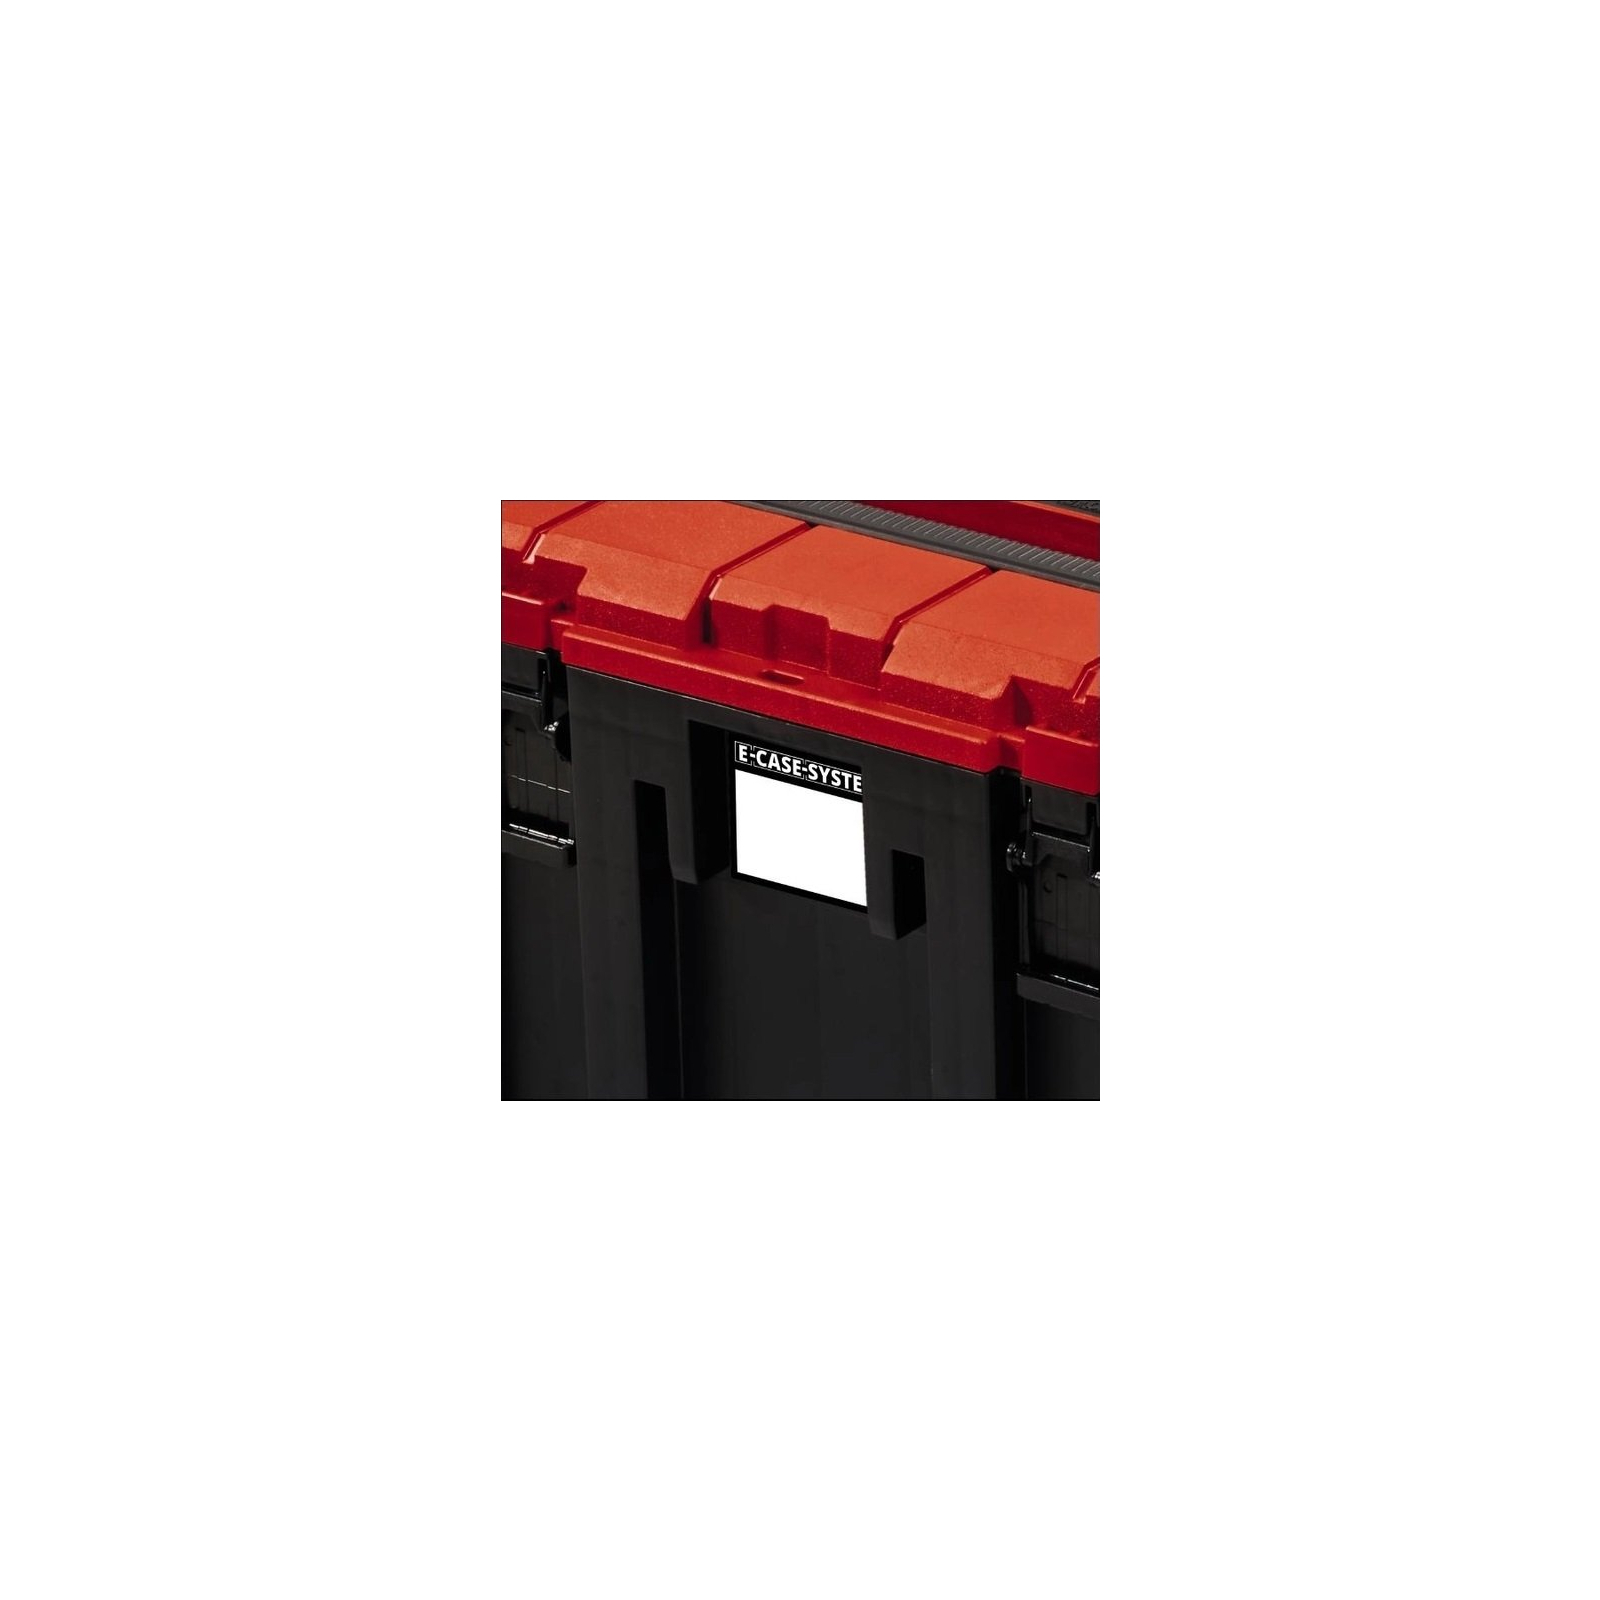 Ящик для инструментов Einhell E-Case M до 90кг. (4540021) изображение 3